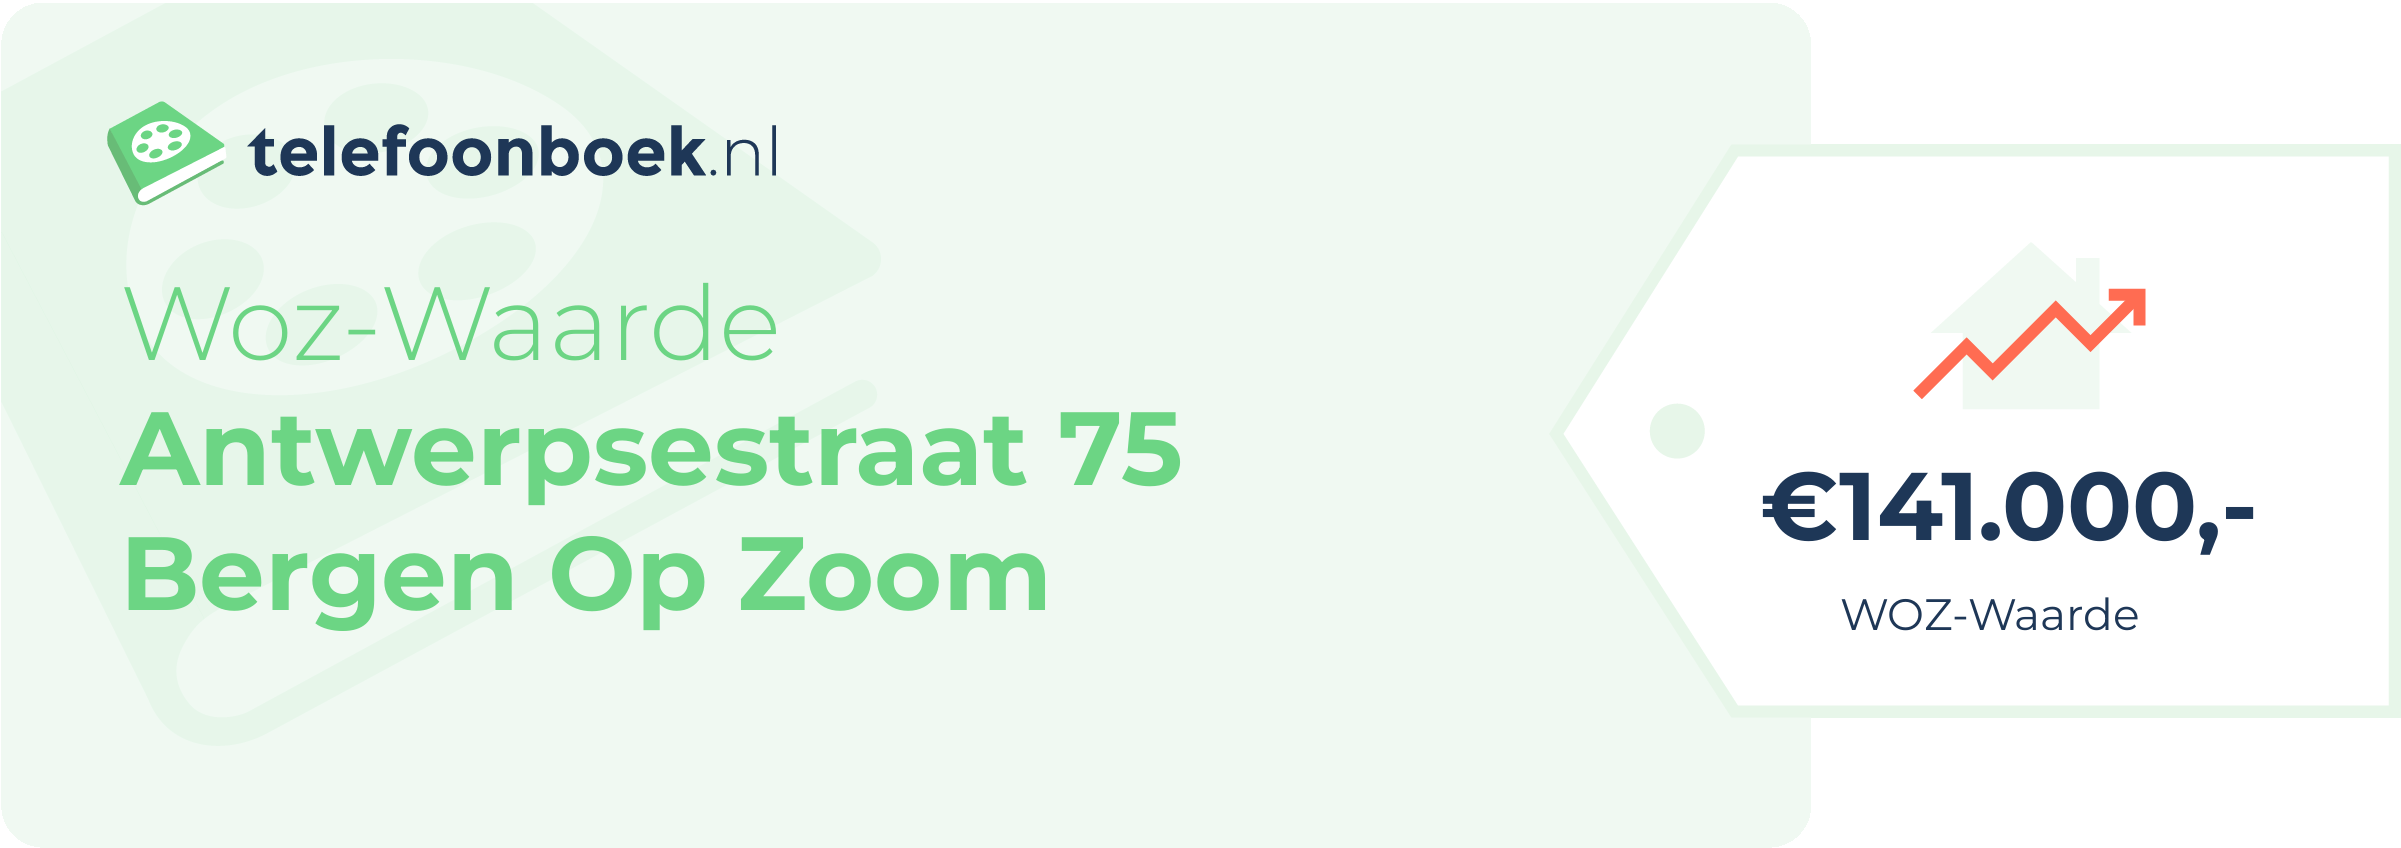 WOZ-waarde Antwerpsestraat 75 Bergen Op Zoom